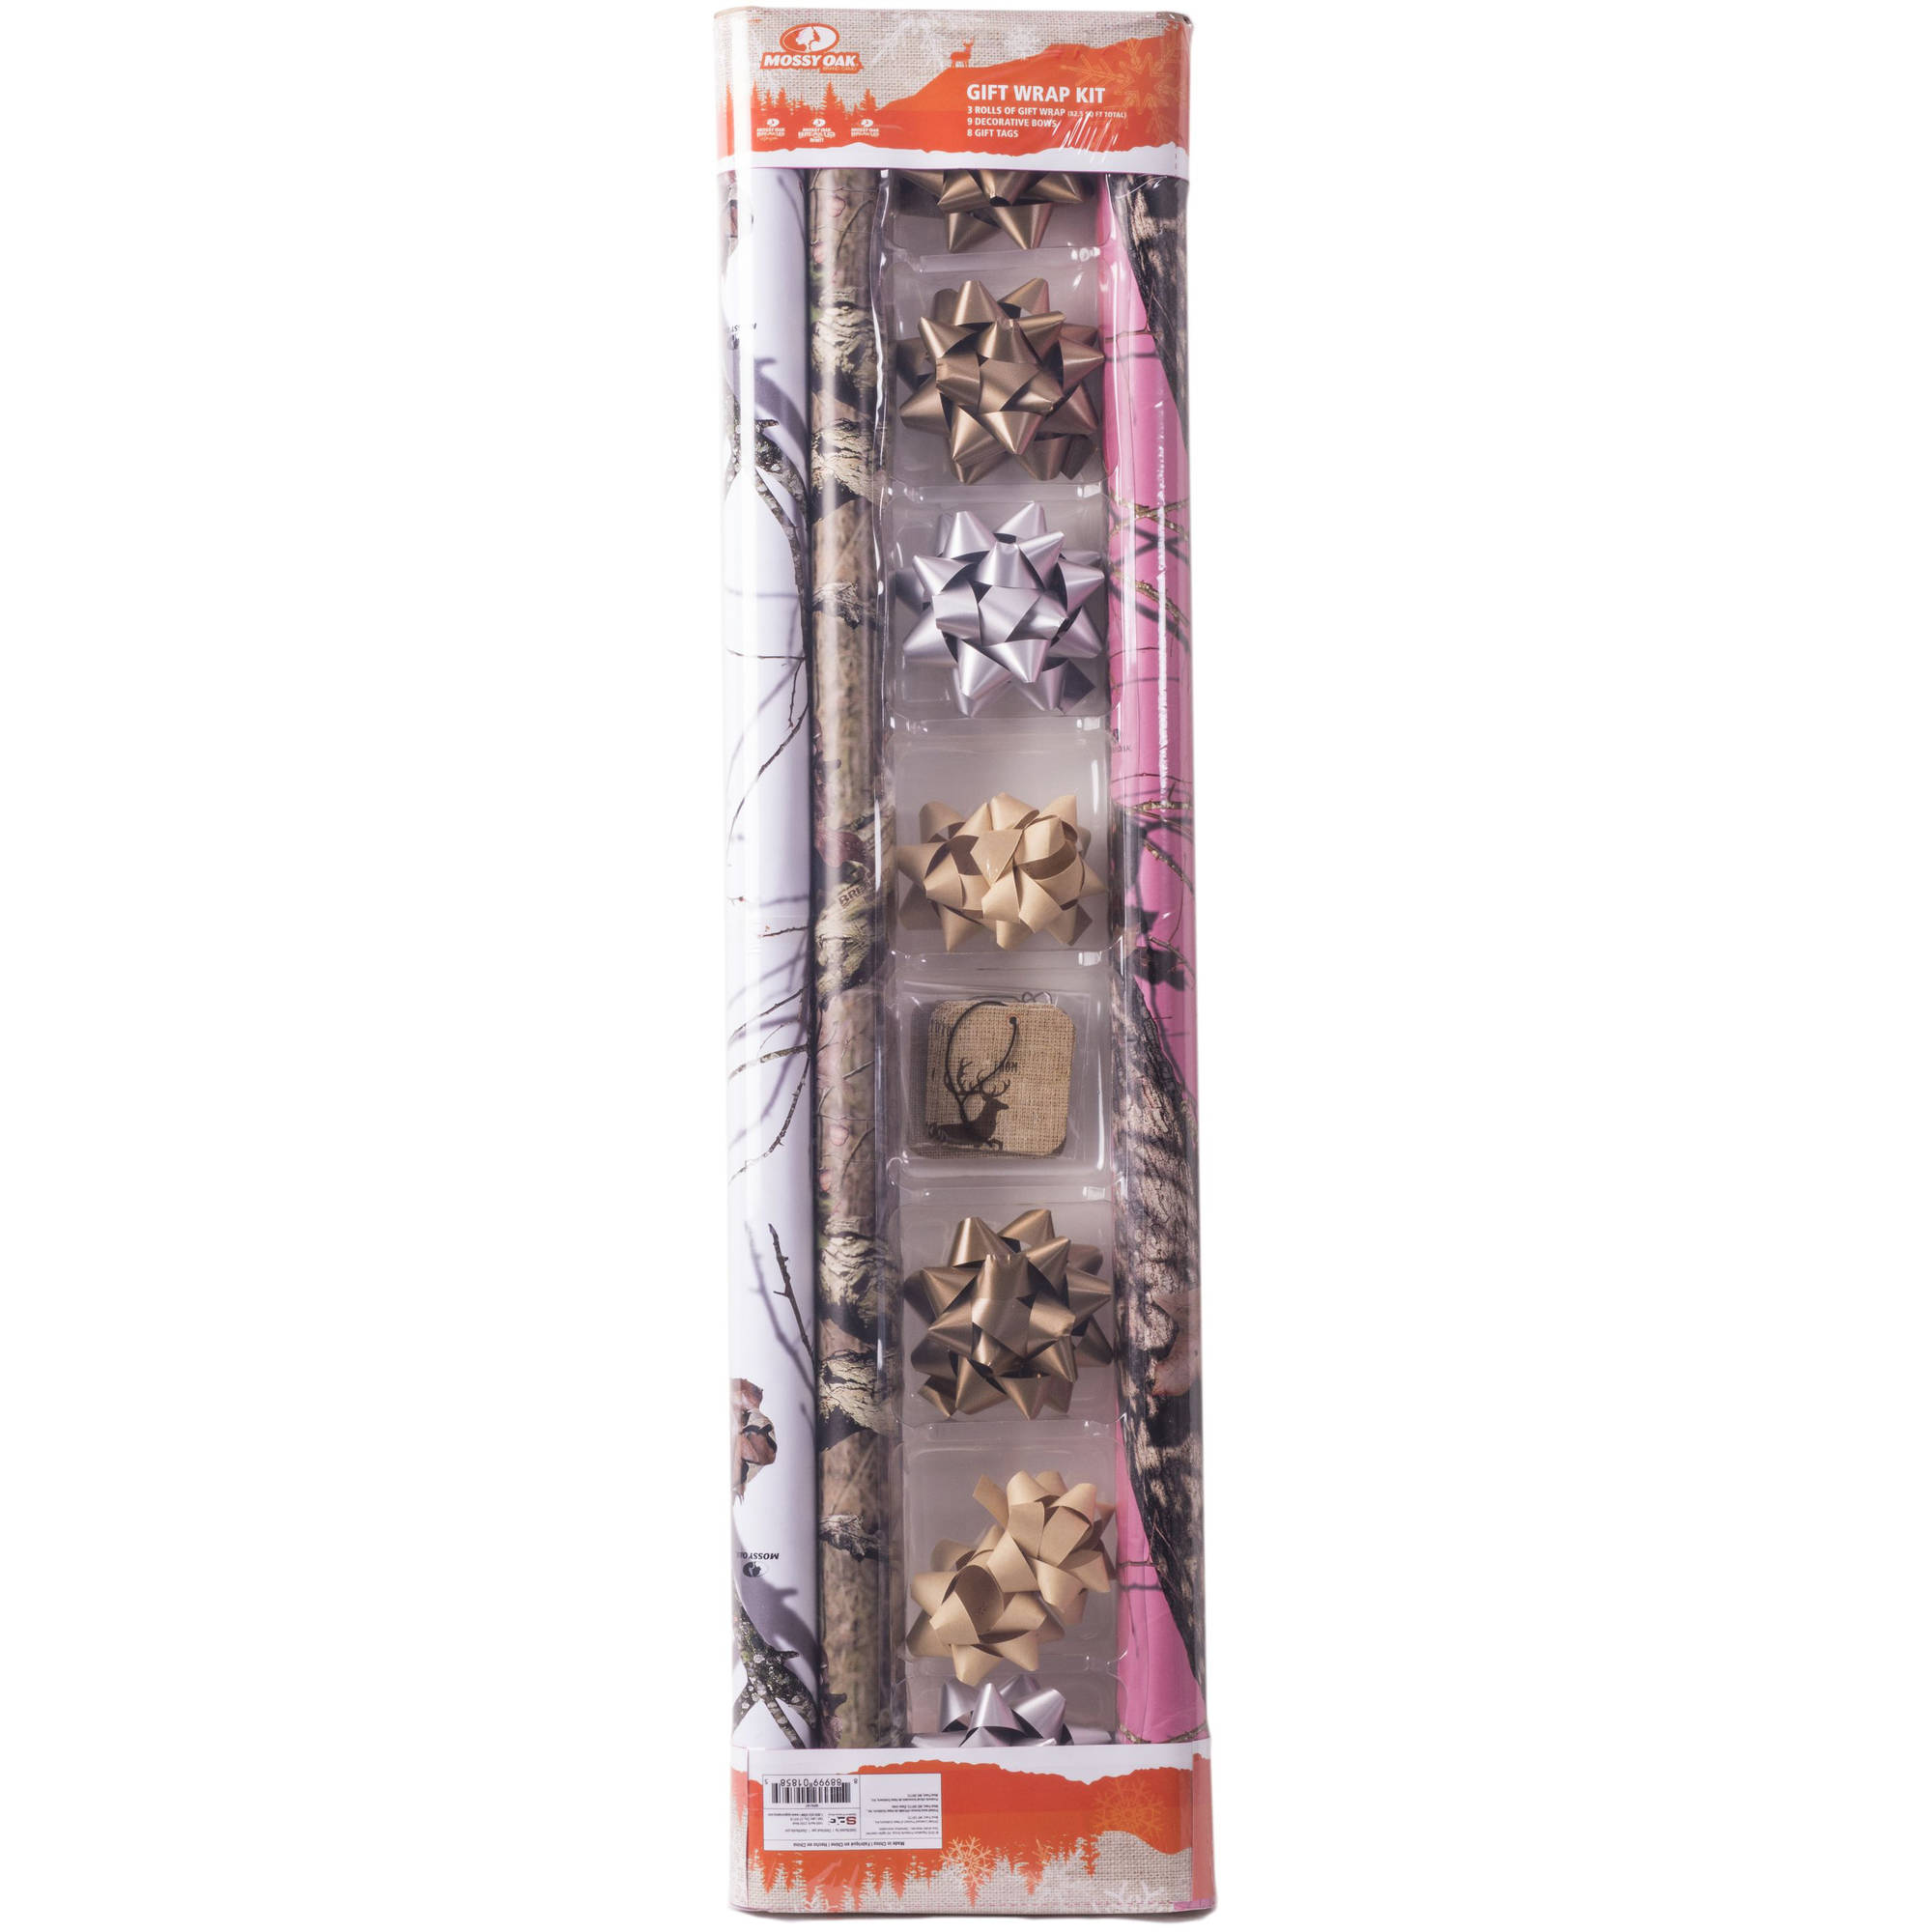 Mossy Oak 3-Pack Gift Wrap Kit 